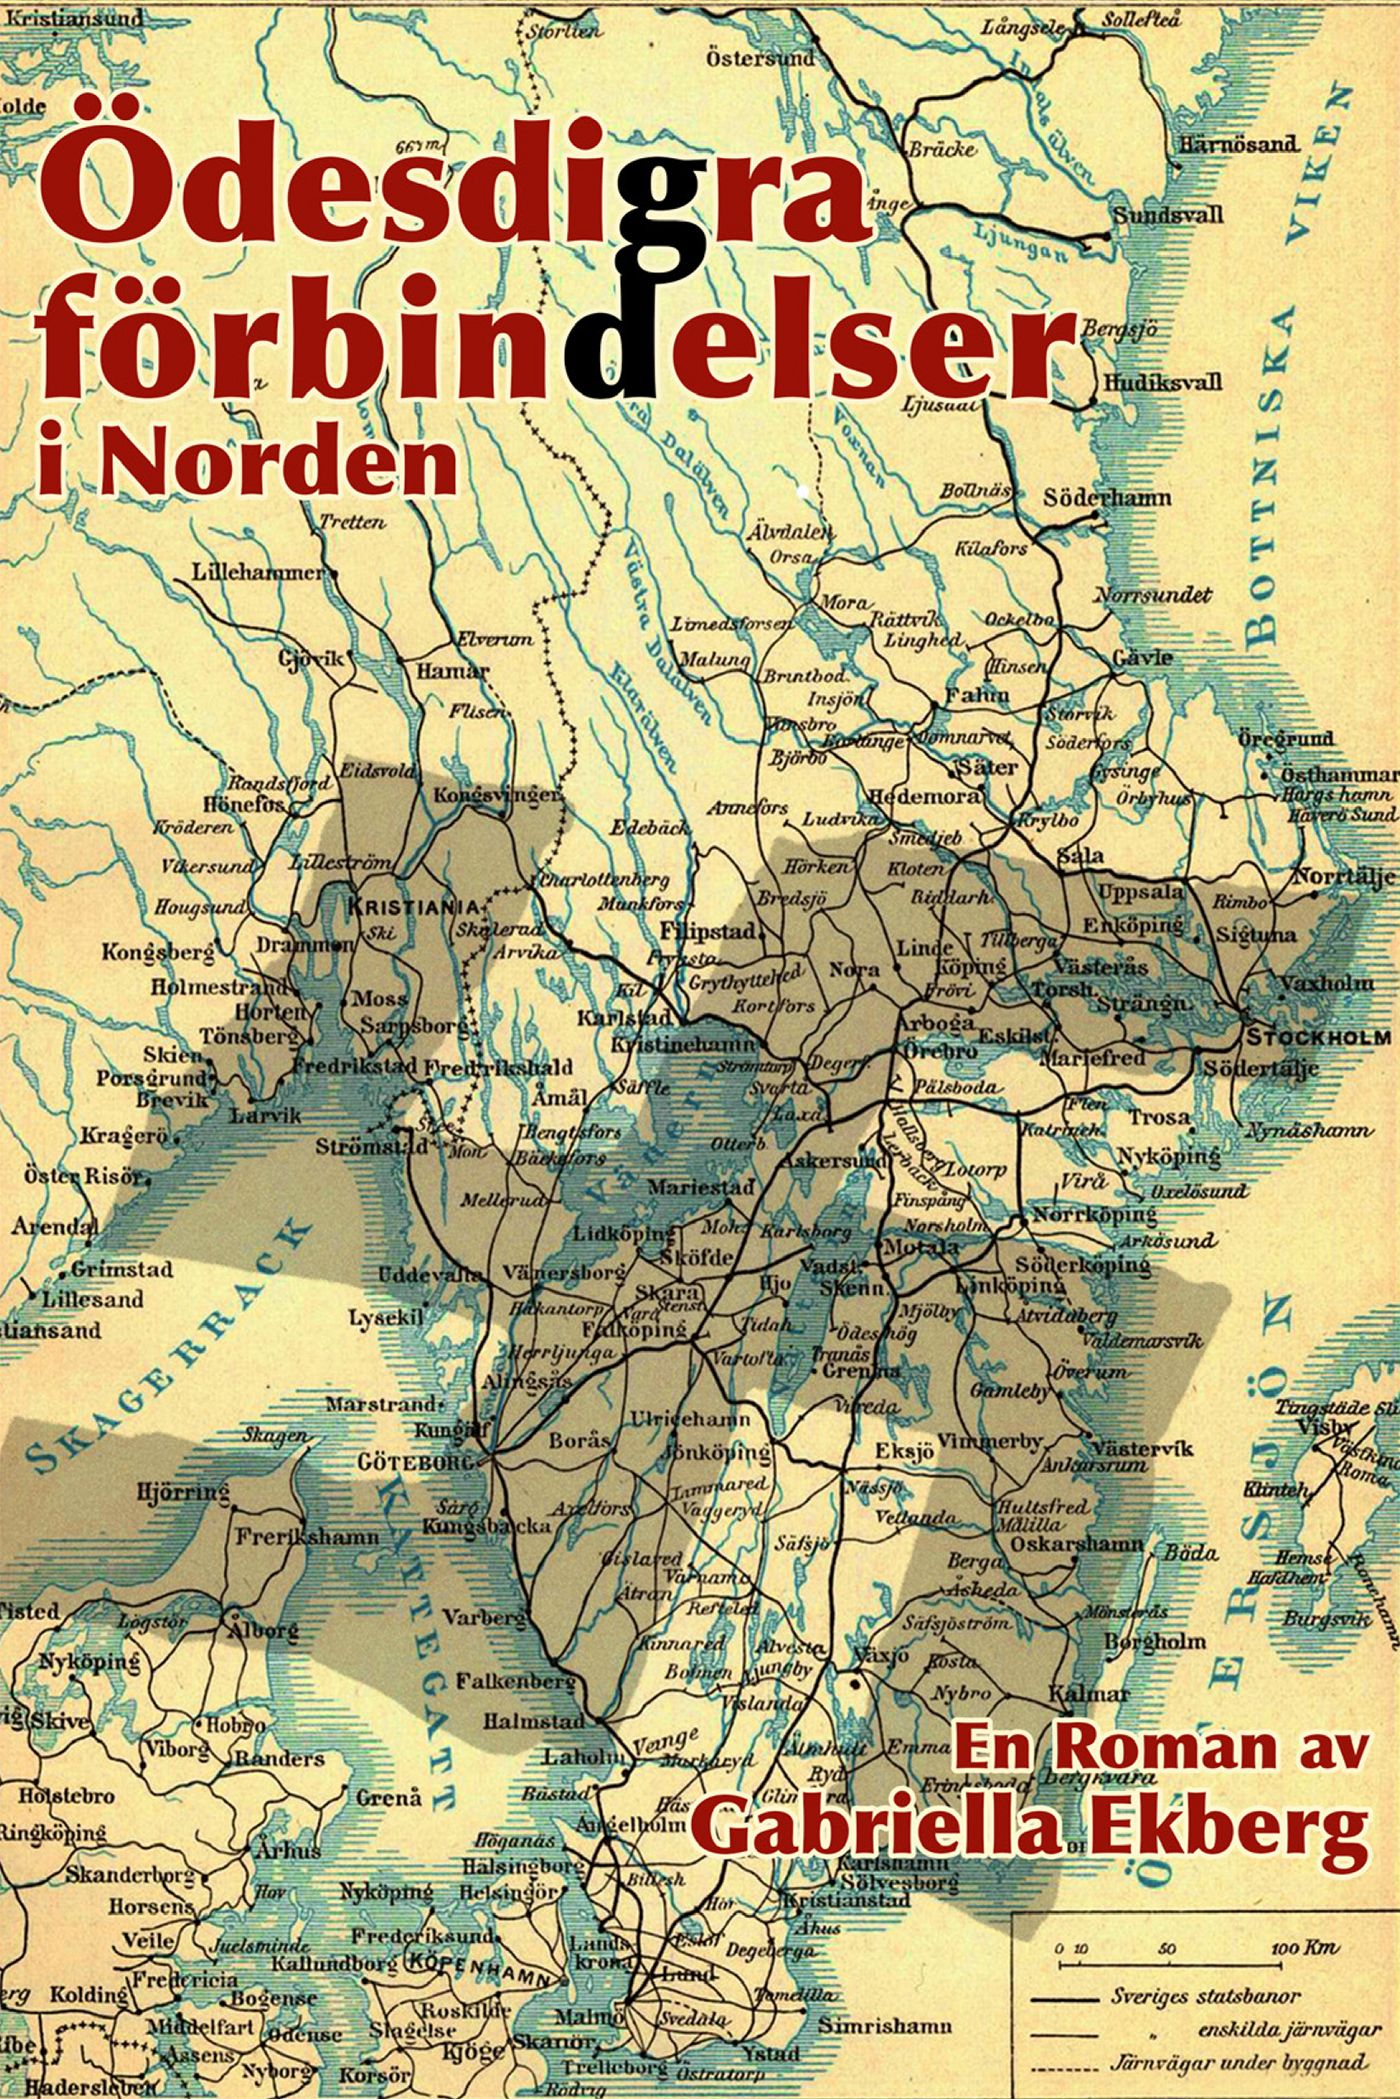 Ödesdigra förbindelser i Norden, e-bog af Gabriella Ekberg